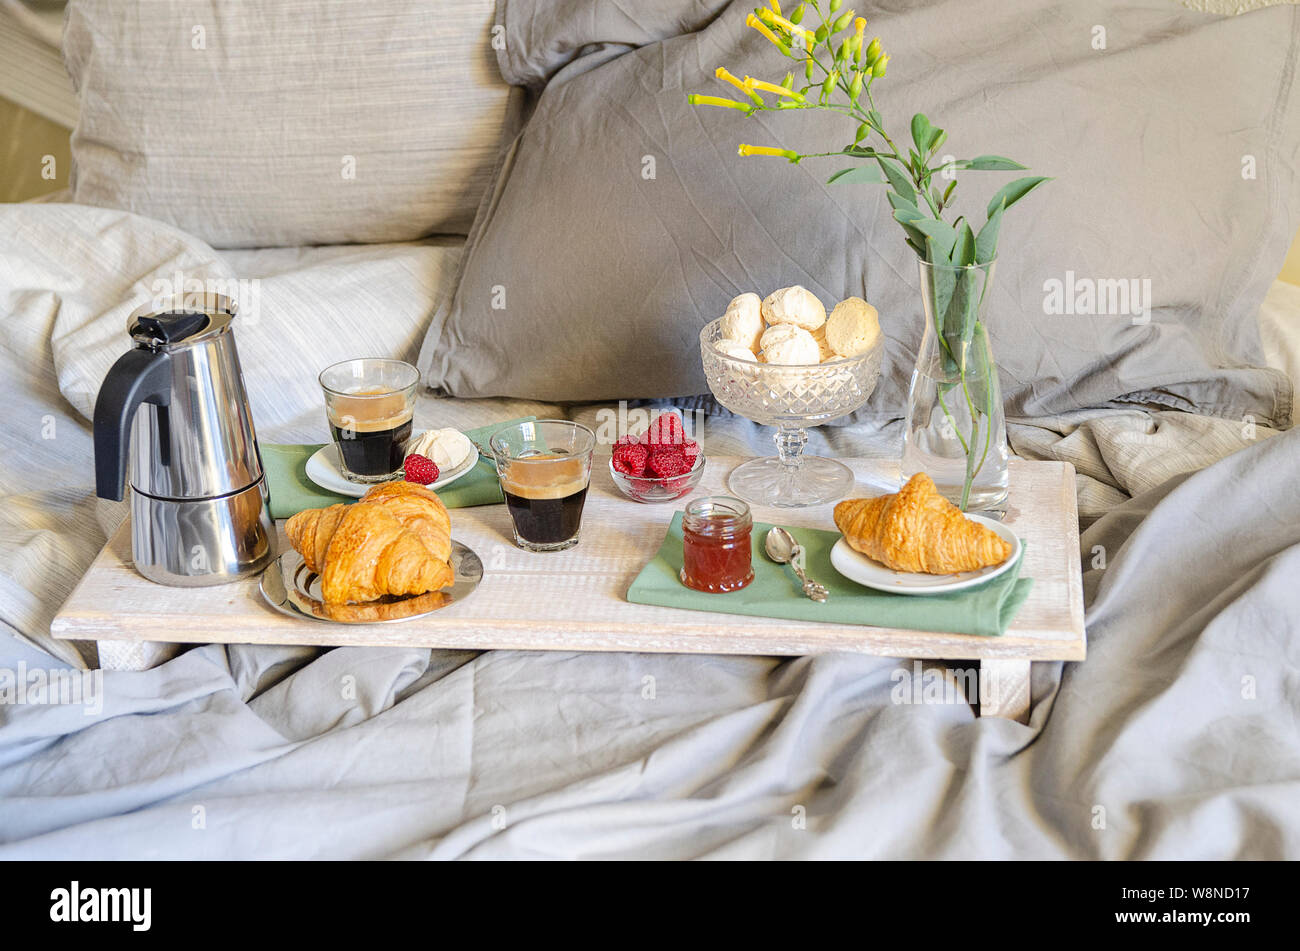 Romantisches Frühstück oder Brunch für zwei im Bett. Kaffeemaschine und  Kaffee Gläser, Croissants, Marmelade, Beeren, Baiser und Blumen auf Holz  fach Romantische Stockfotografie - Alamy